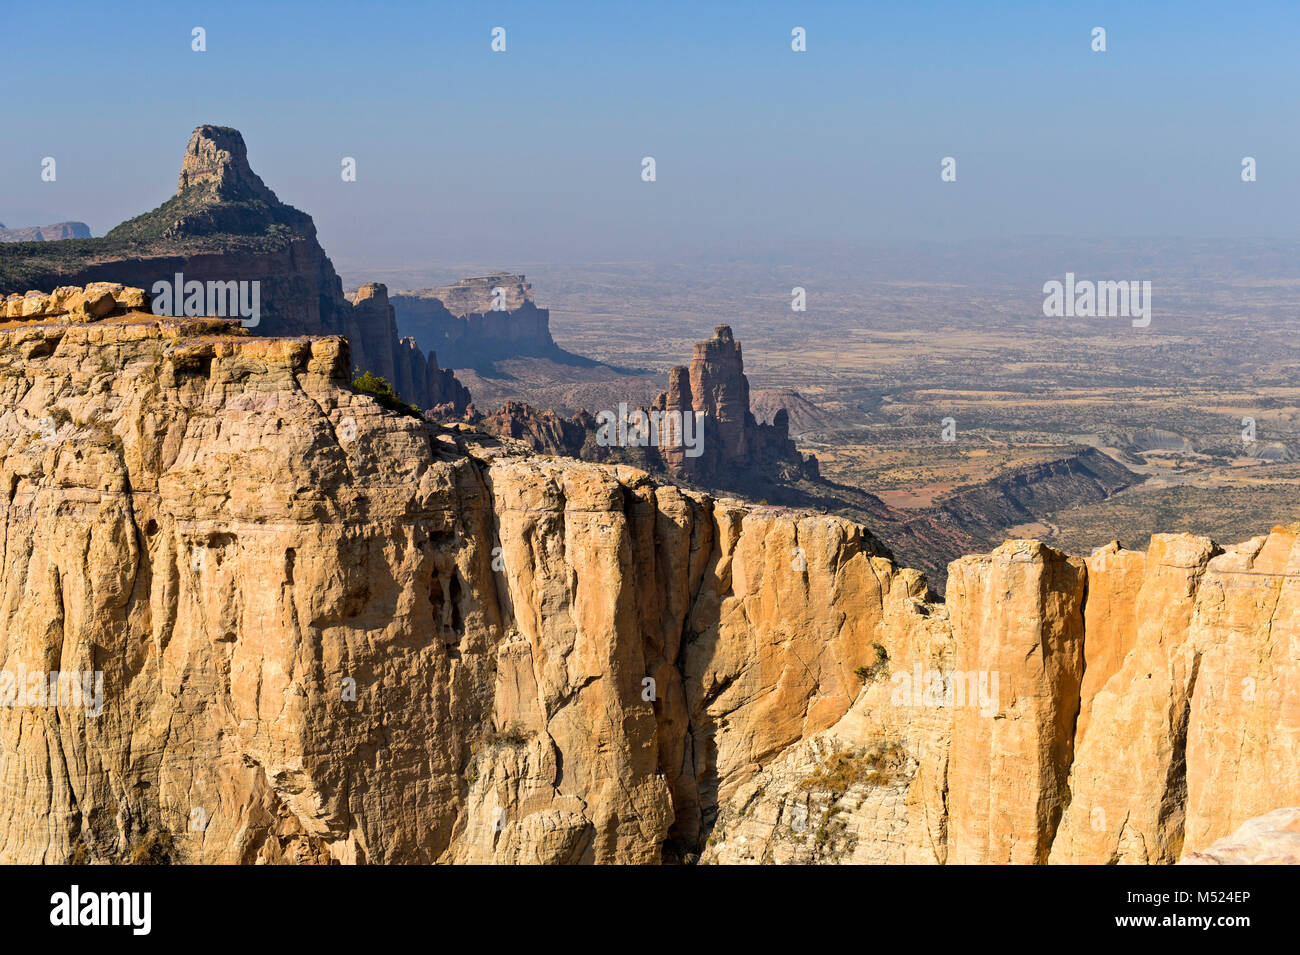 Großen Afrikanischen Grabenbruch, nördlichen Ausläufern mit koraro Felsnadeln in den Bergen, in der Nähe von Gheralta Hawzien, Tigray, Äthiopien Stockfoto